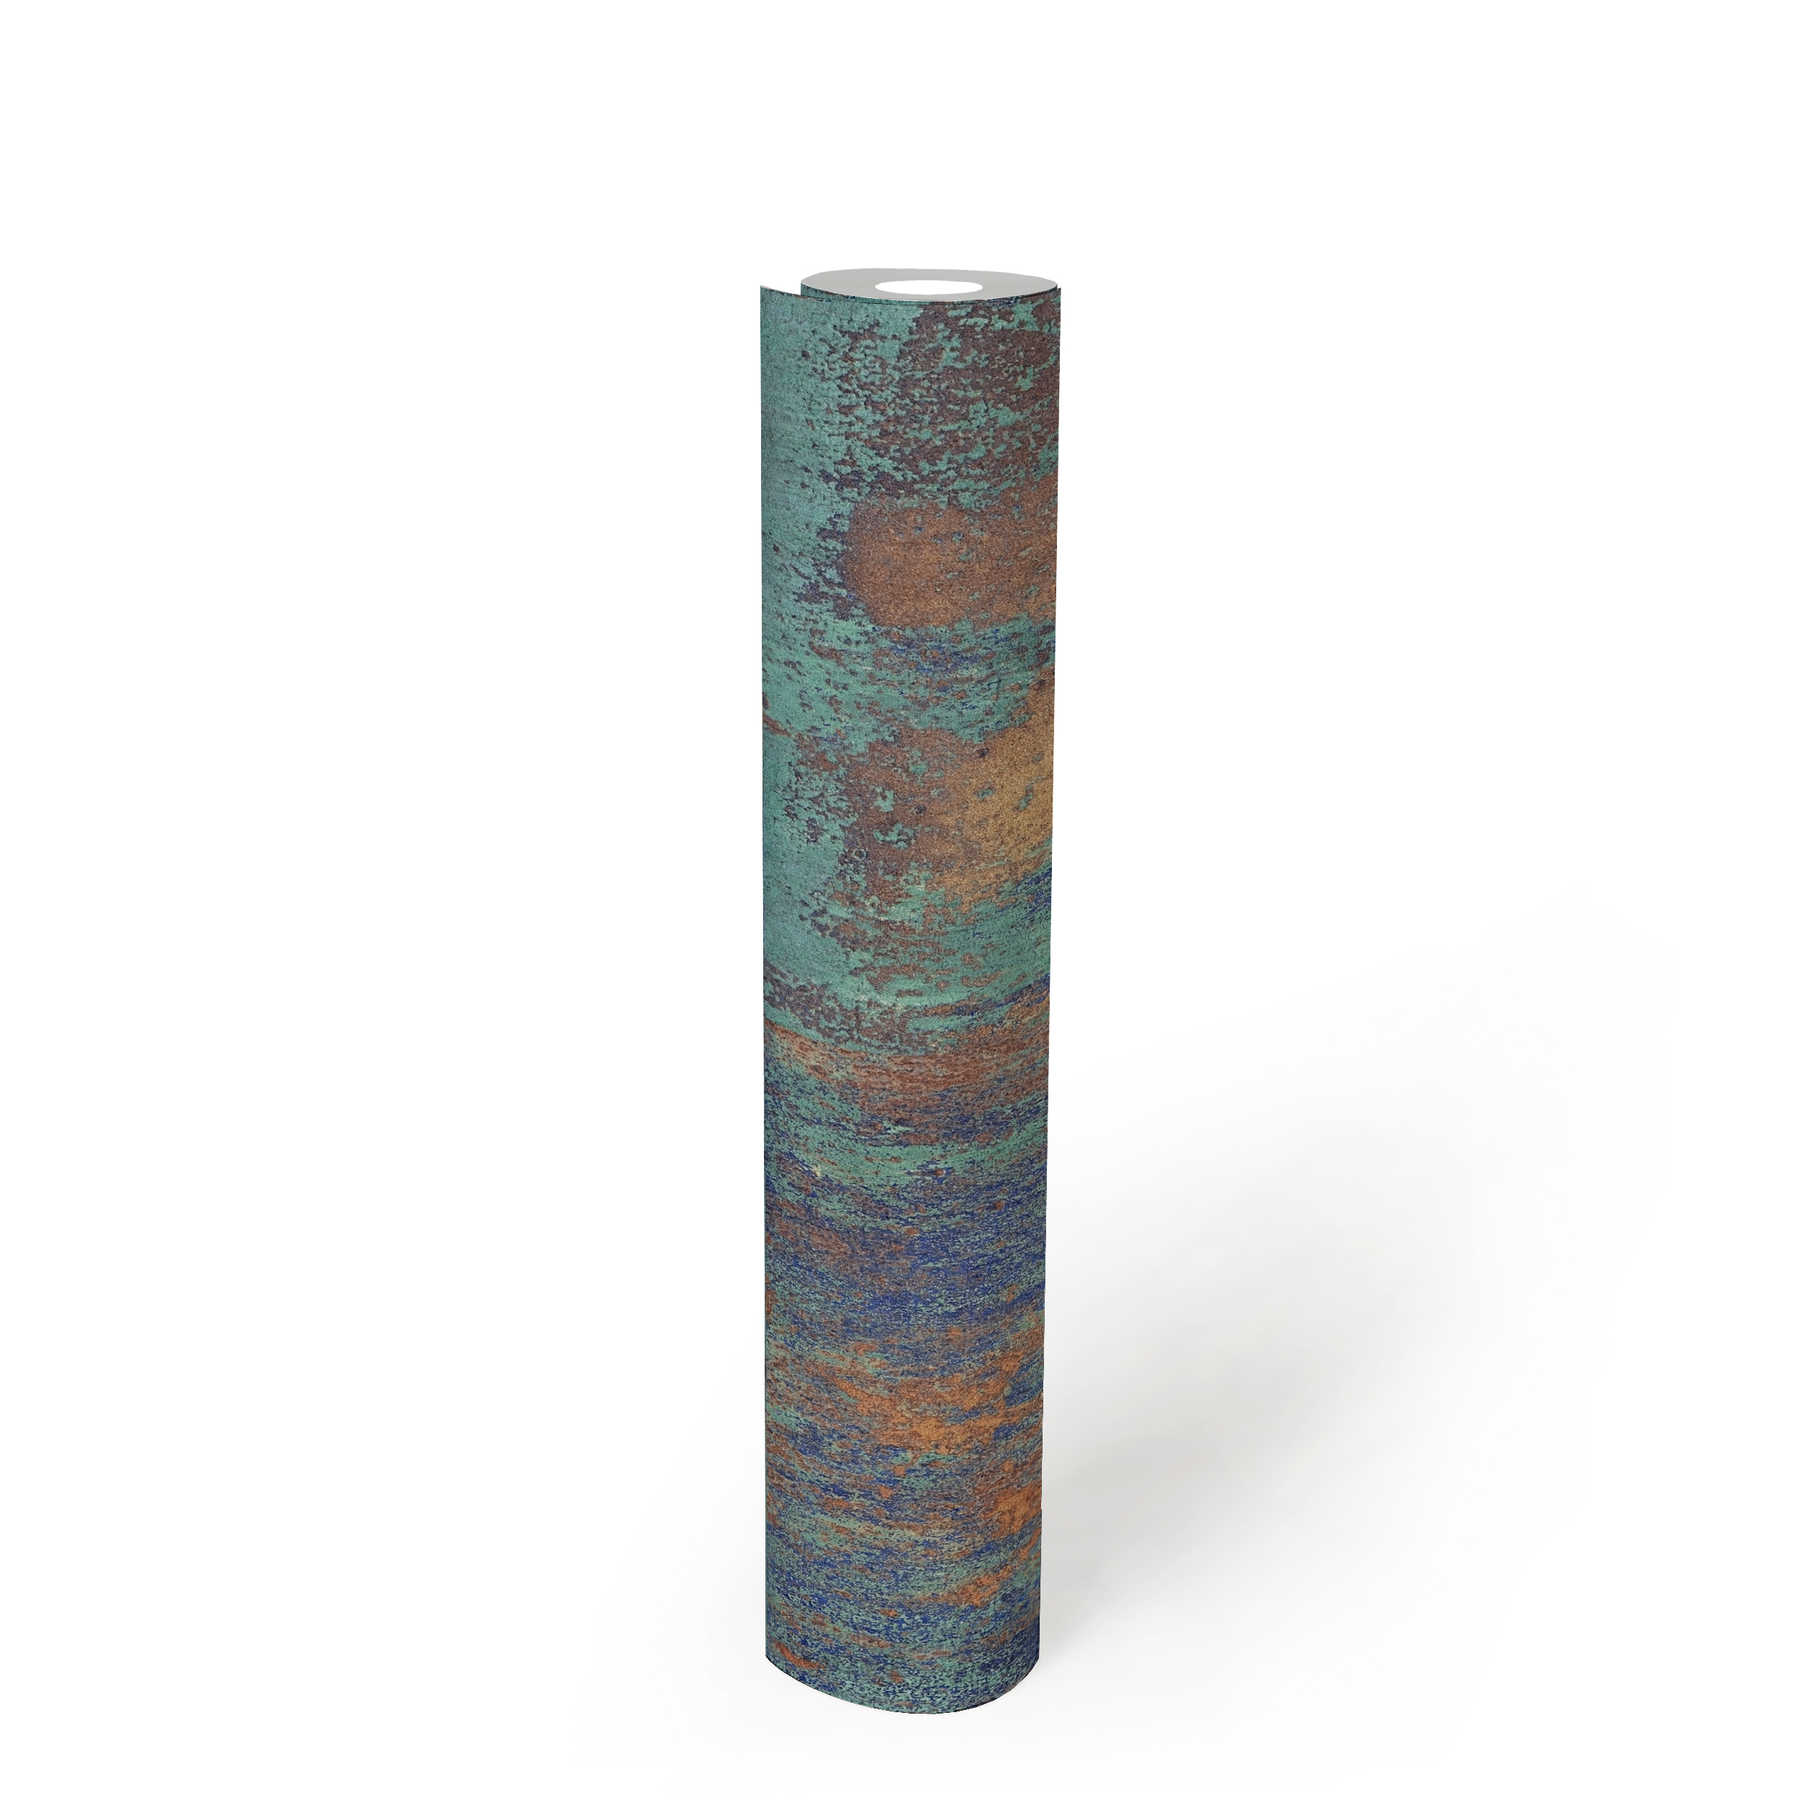             Vliestapete Patina-Design mit Rost und Kupfereffekten – Blau, Braun, Kupfer
        